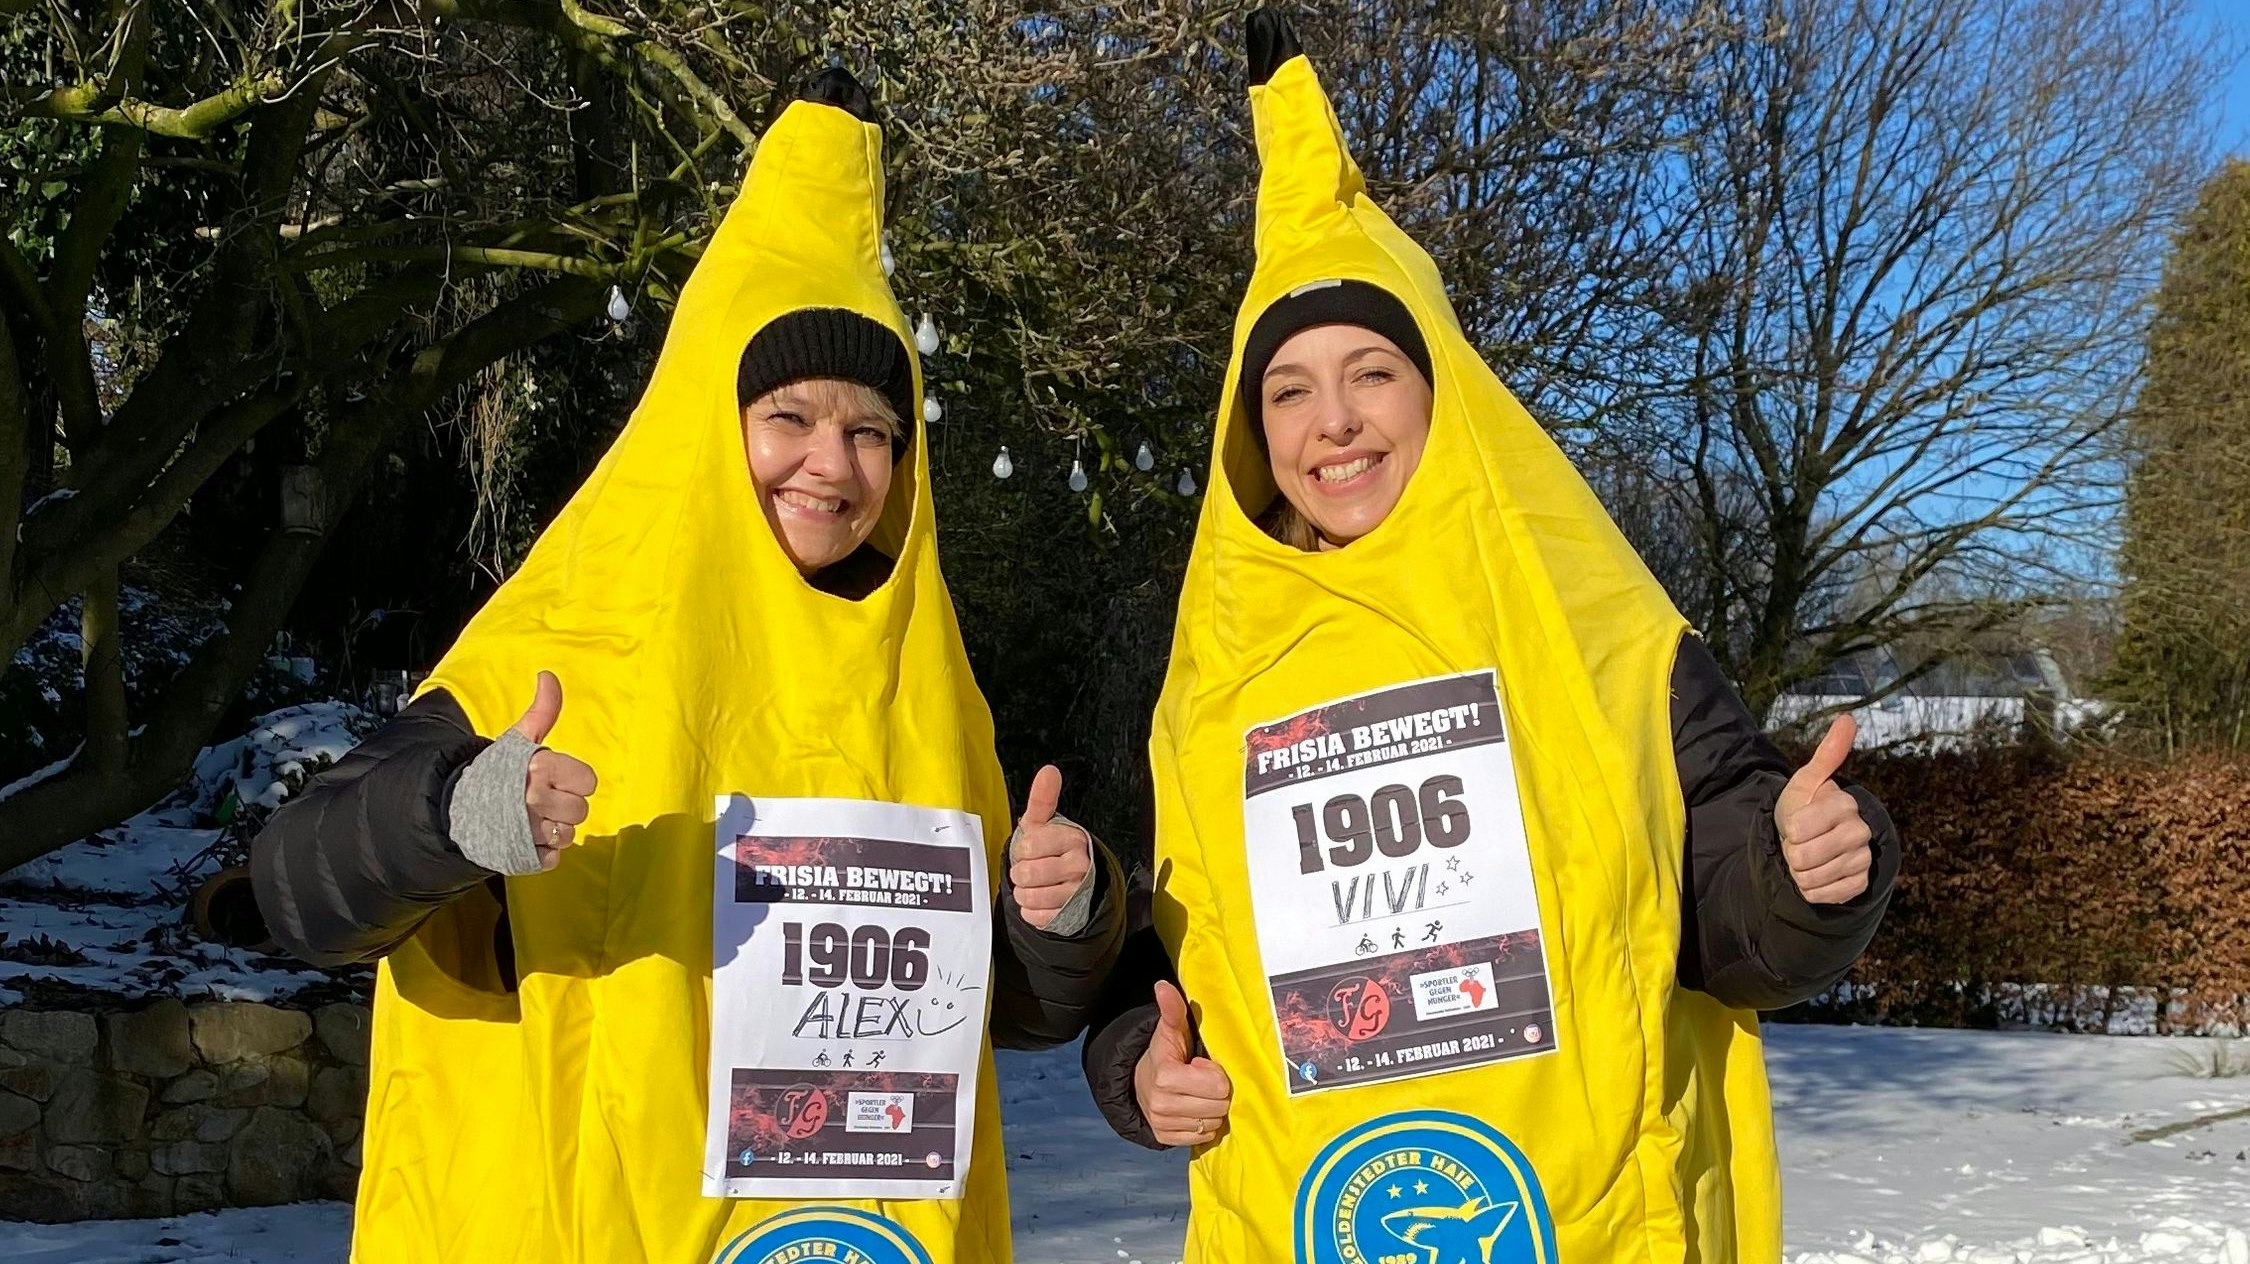 Als Bananen draußen unterwegs: Alexandra Seidel (links) und Vivien Fragge. Foto: Instagram/Frisia Goldenstedt